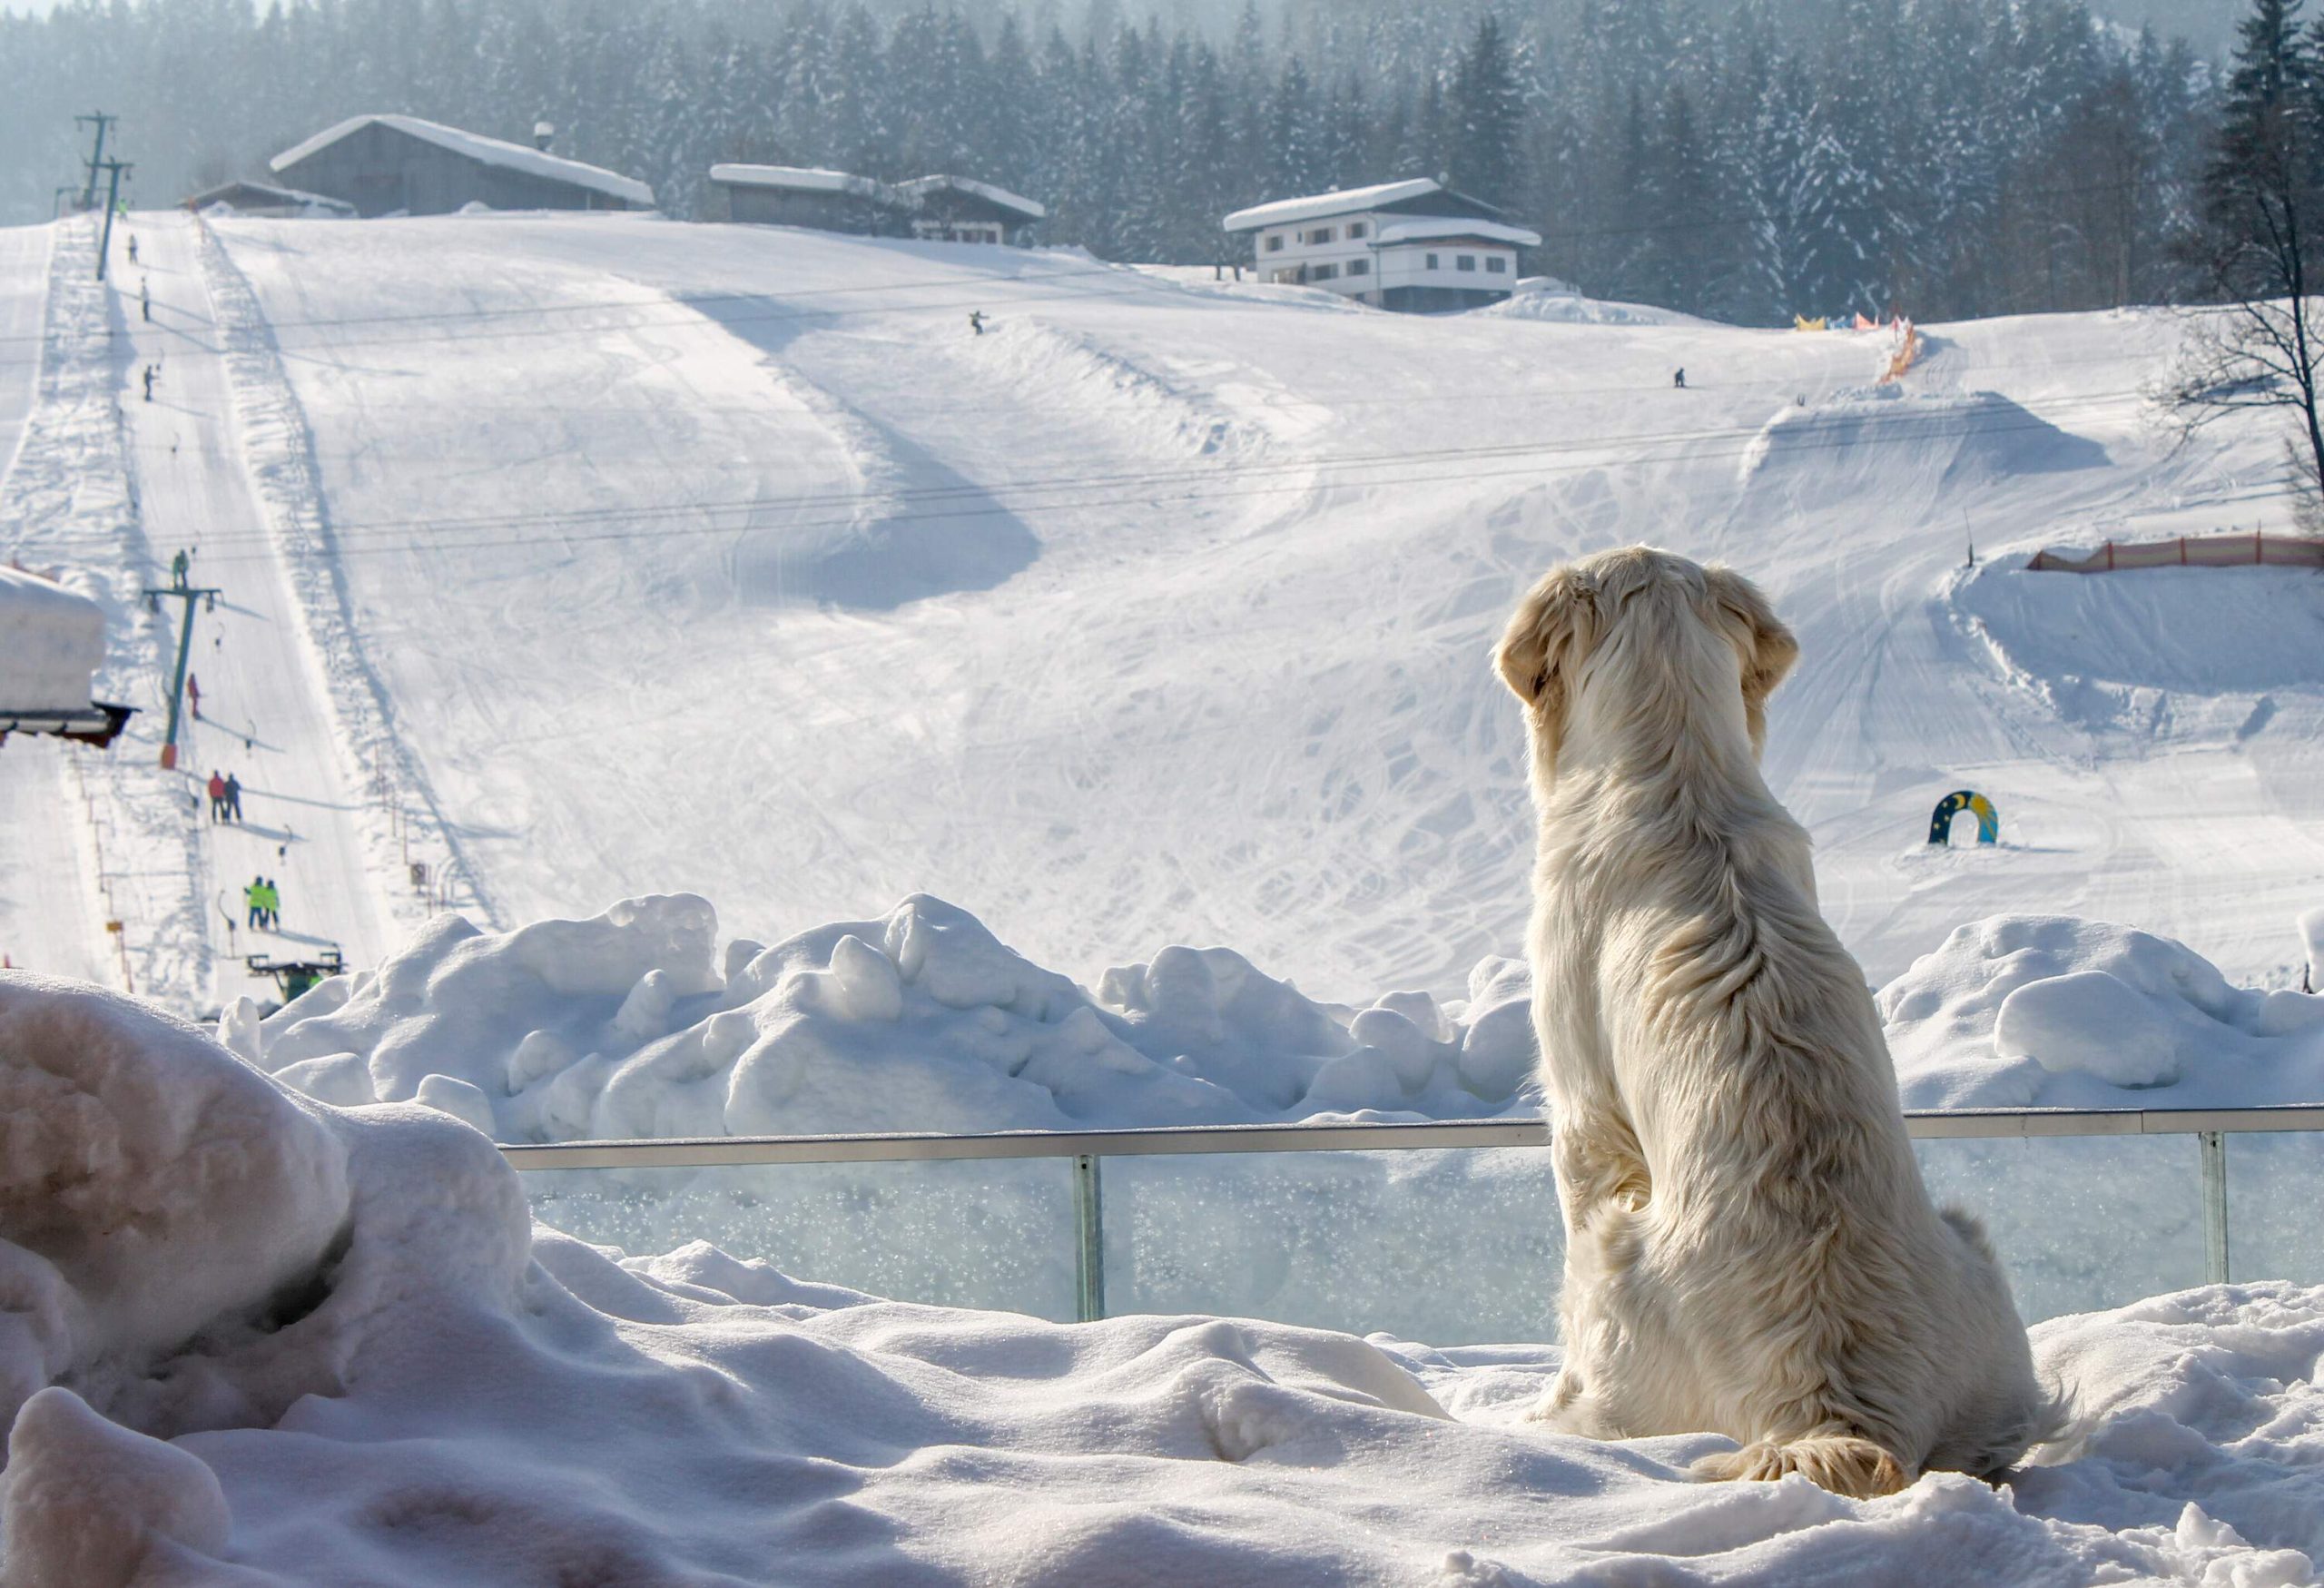 dest_austria_salzburg_dog_enjoys_looking_at_the_ski_slope_winter_people_gettyimages-913359232